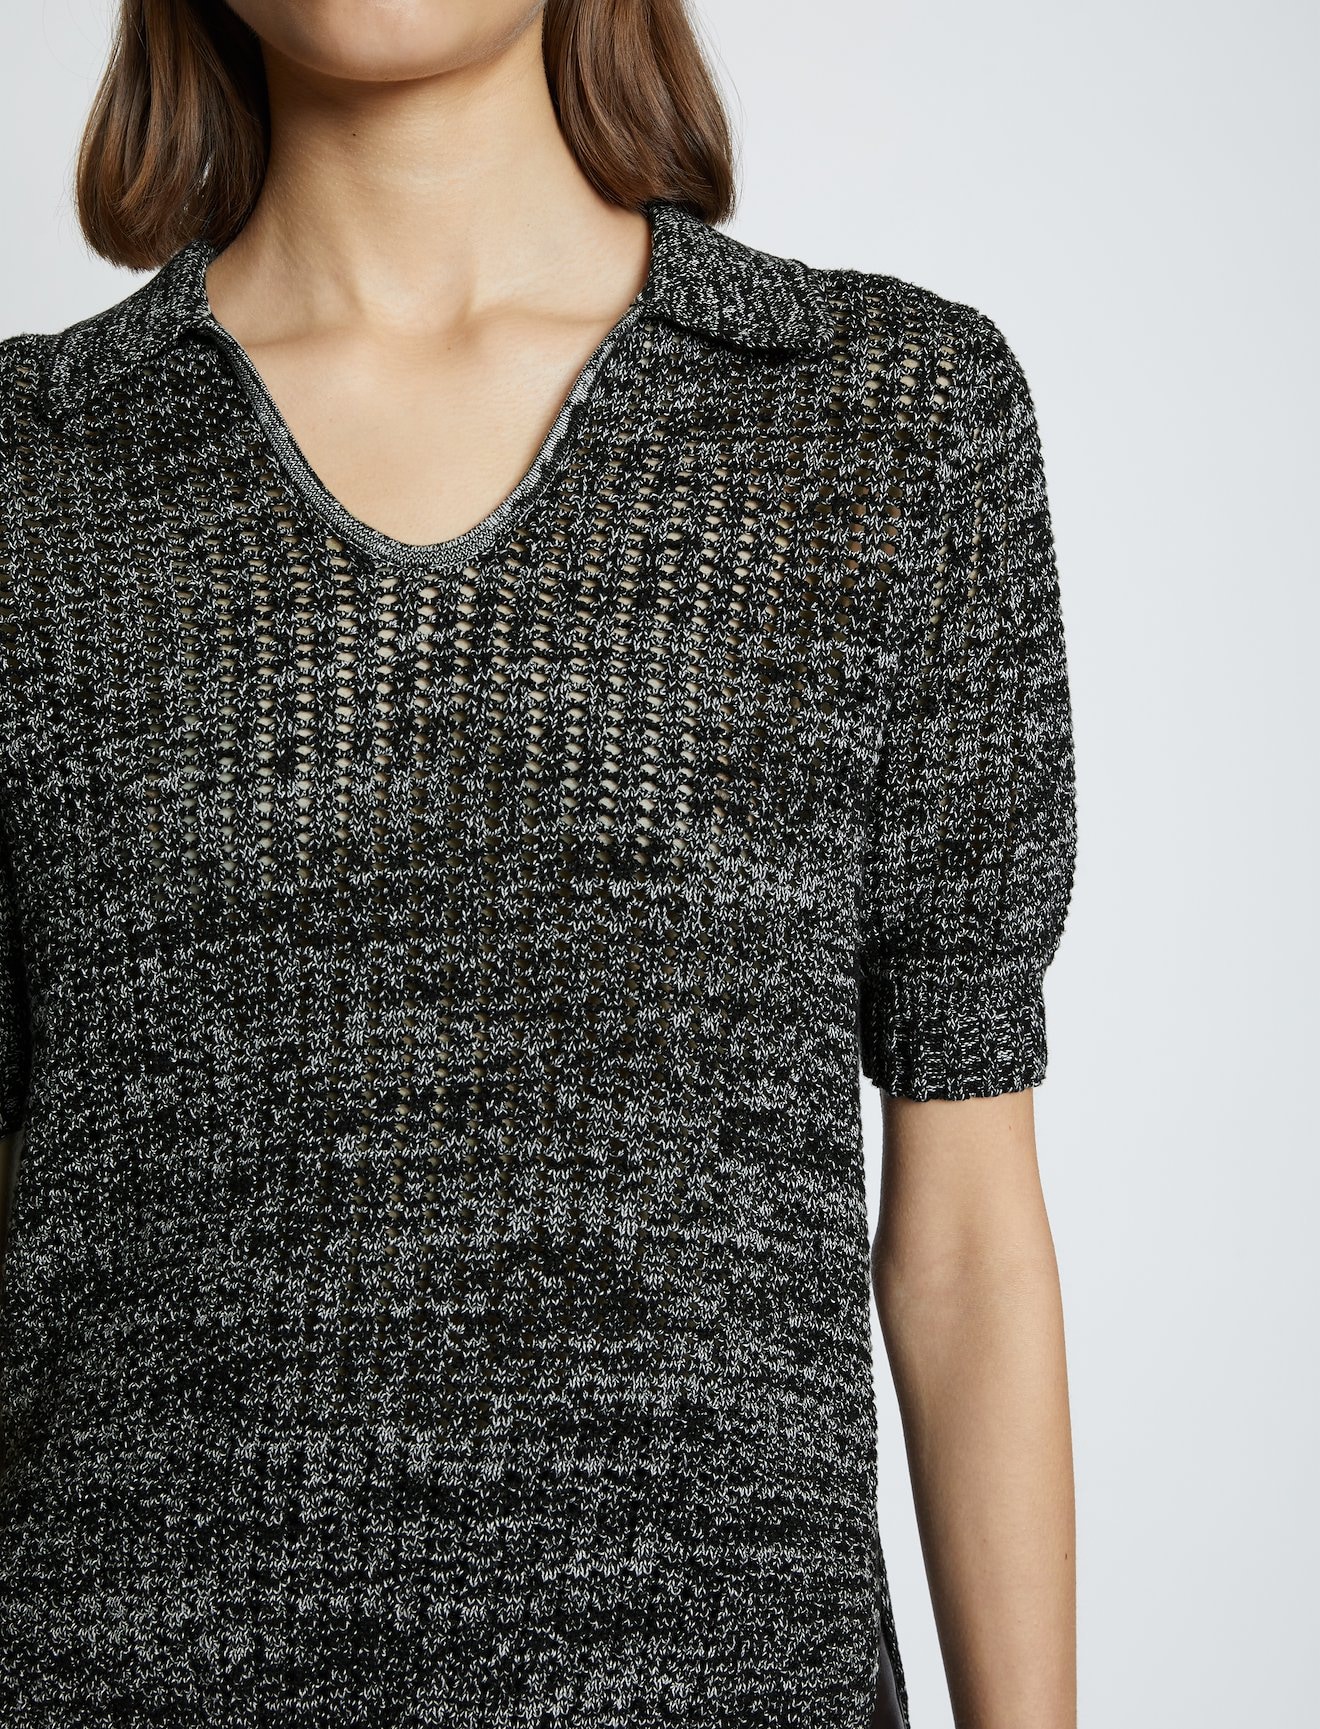 Cotton Silk Pique Knit Polo Top in black | Proenza Schouler